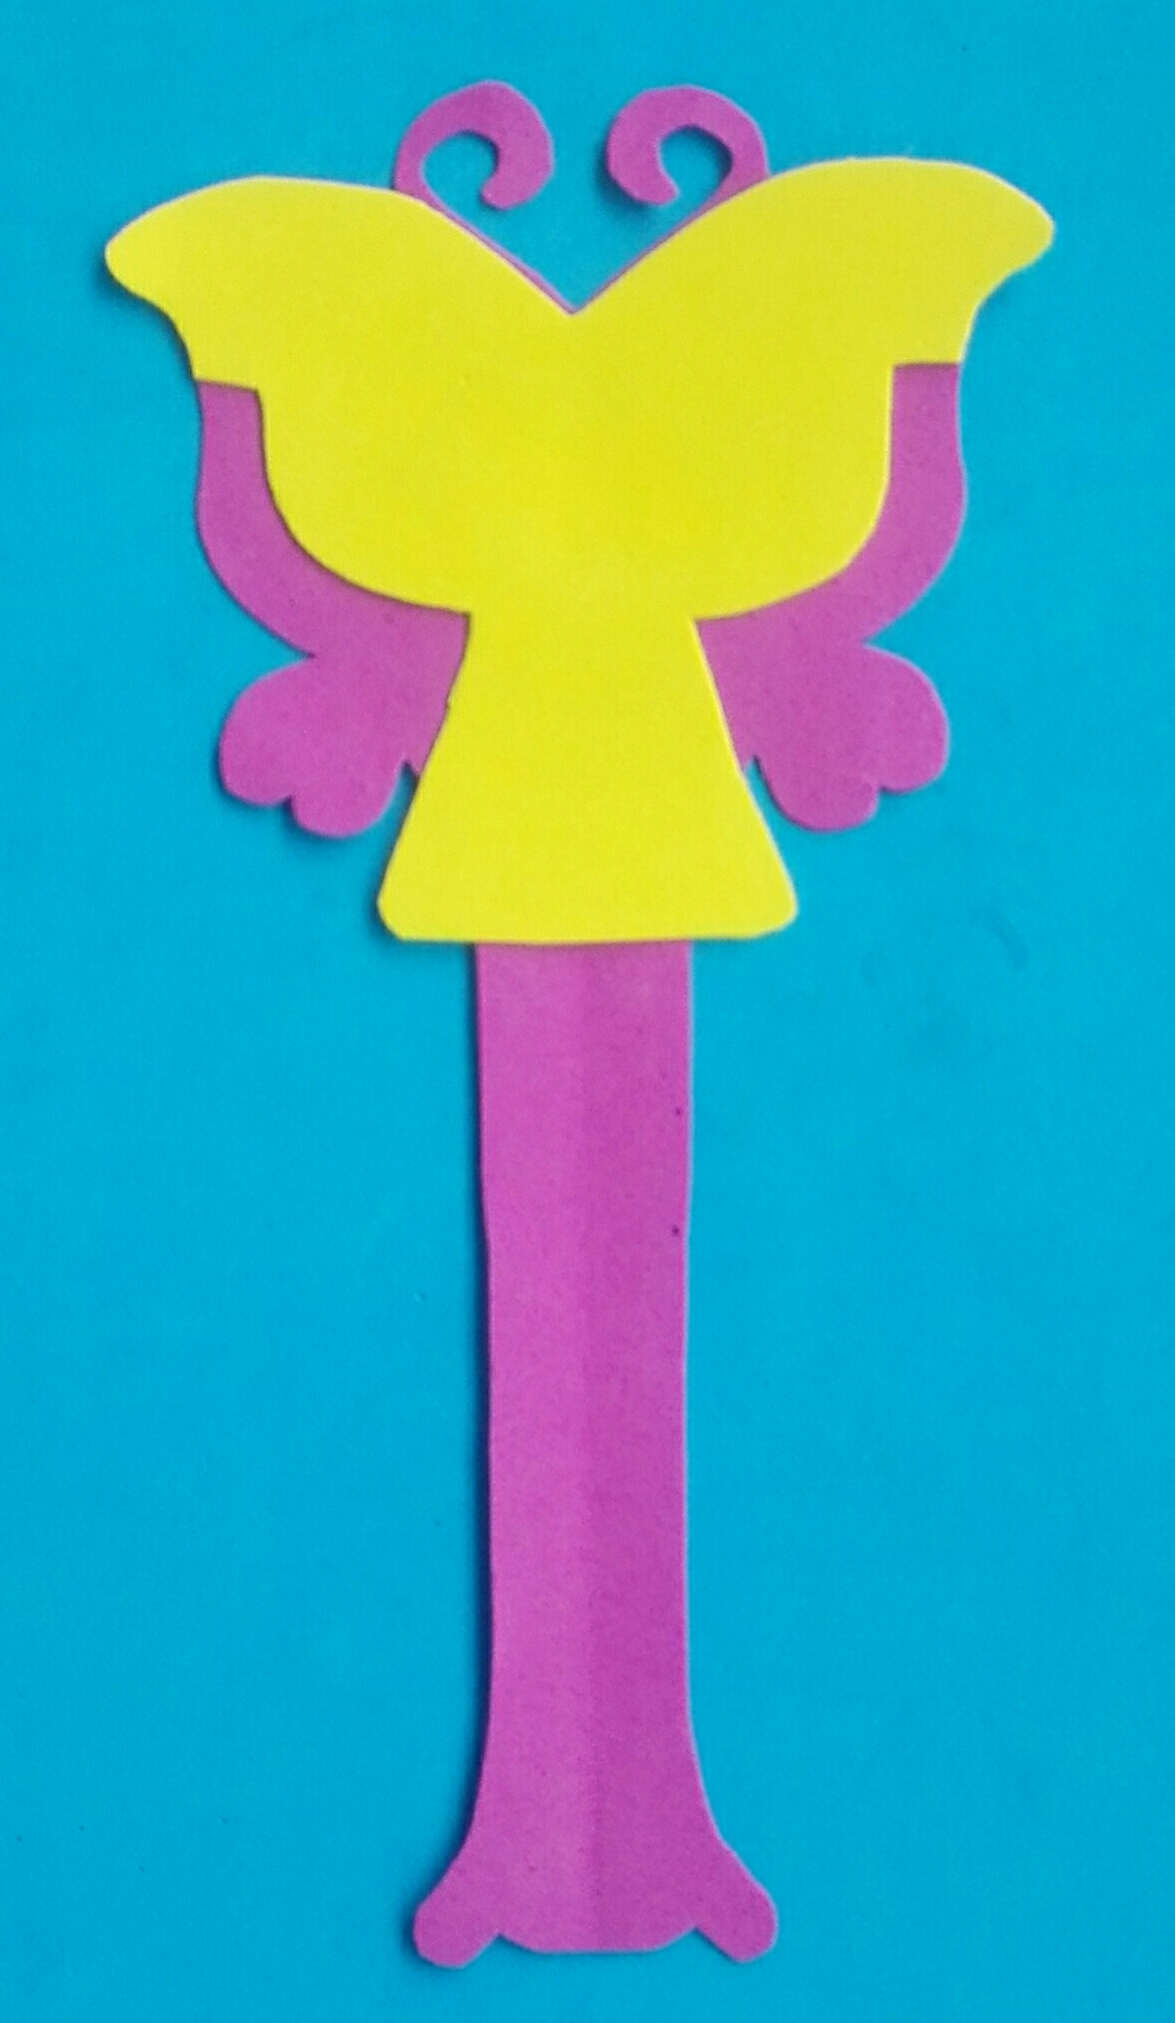 用彩色海绵纸制作漂亮的儿童手工小玩具花蝴蝶详细教程 肉丁儿童网